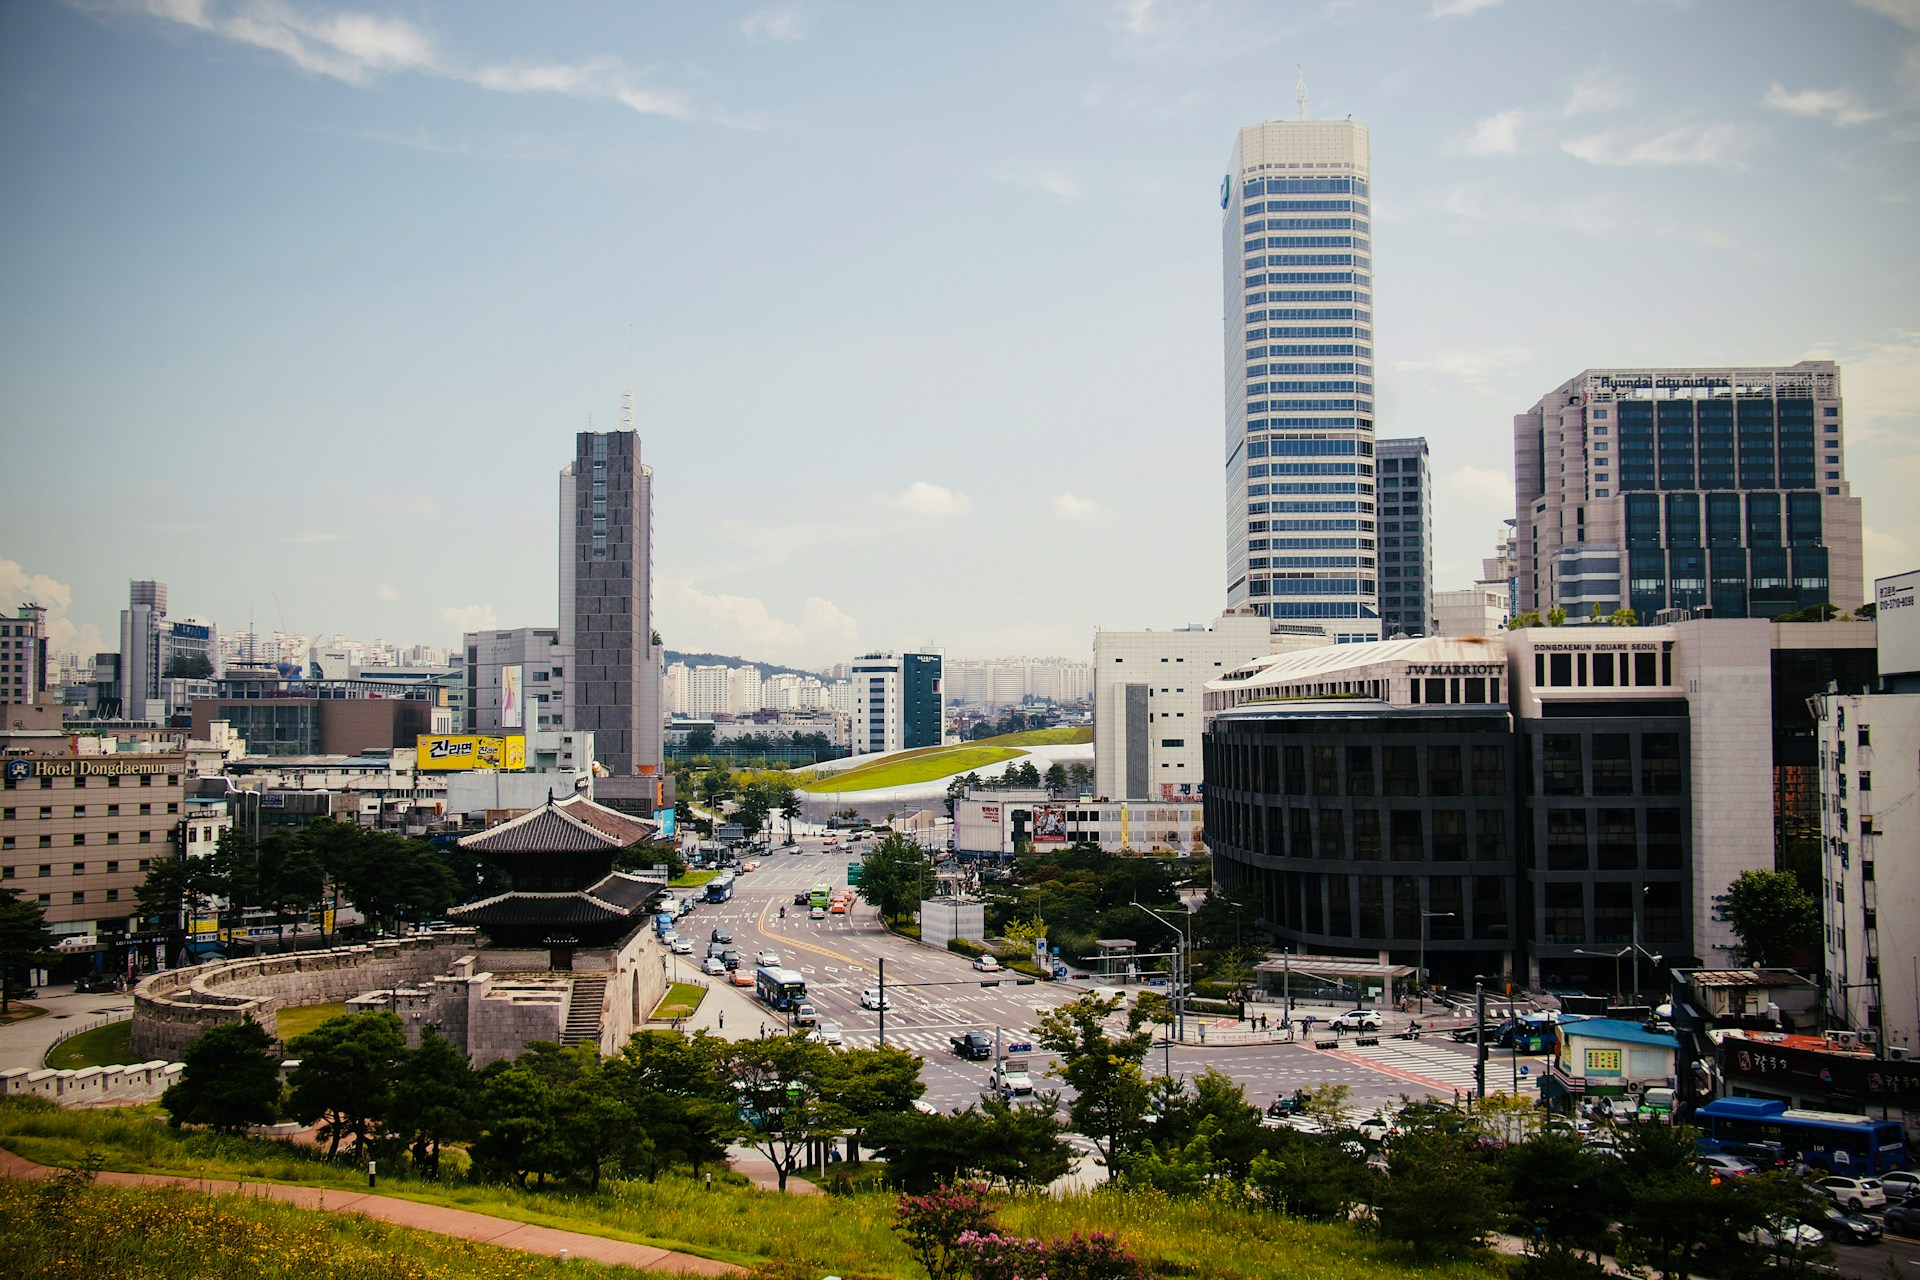 한국 1분기 GDP 성장률 예상치 초과, 하지만 전망 불확실